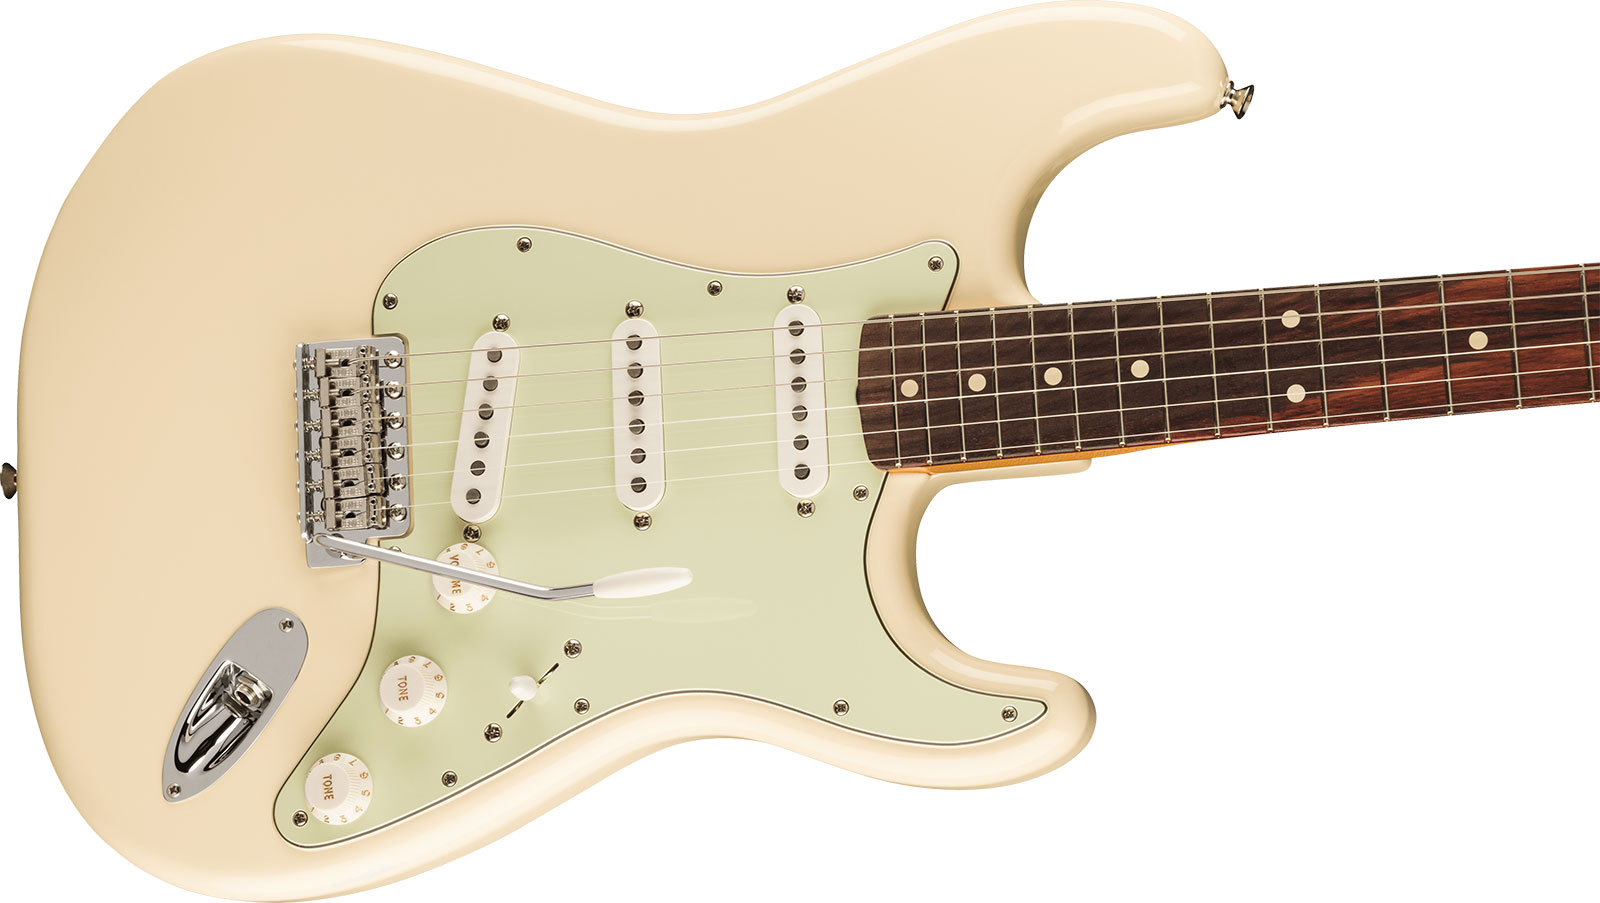 Fender Strat 60s Vintera 2 Mex 3s Trem Rw - Olympic White - Elektrische gitaar in Str-vorm - Variation 2